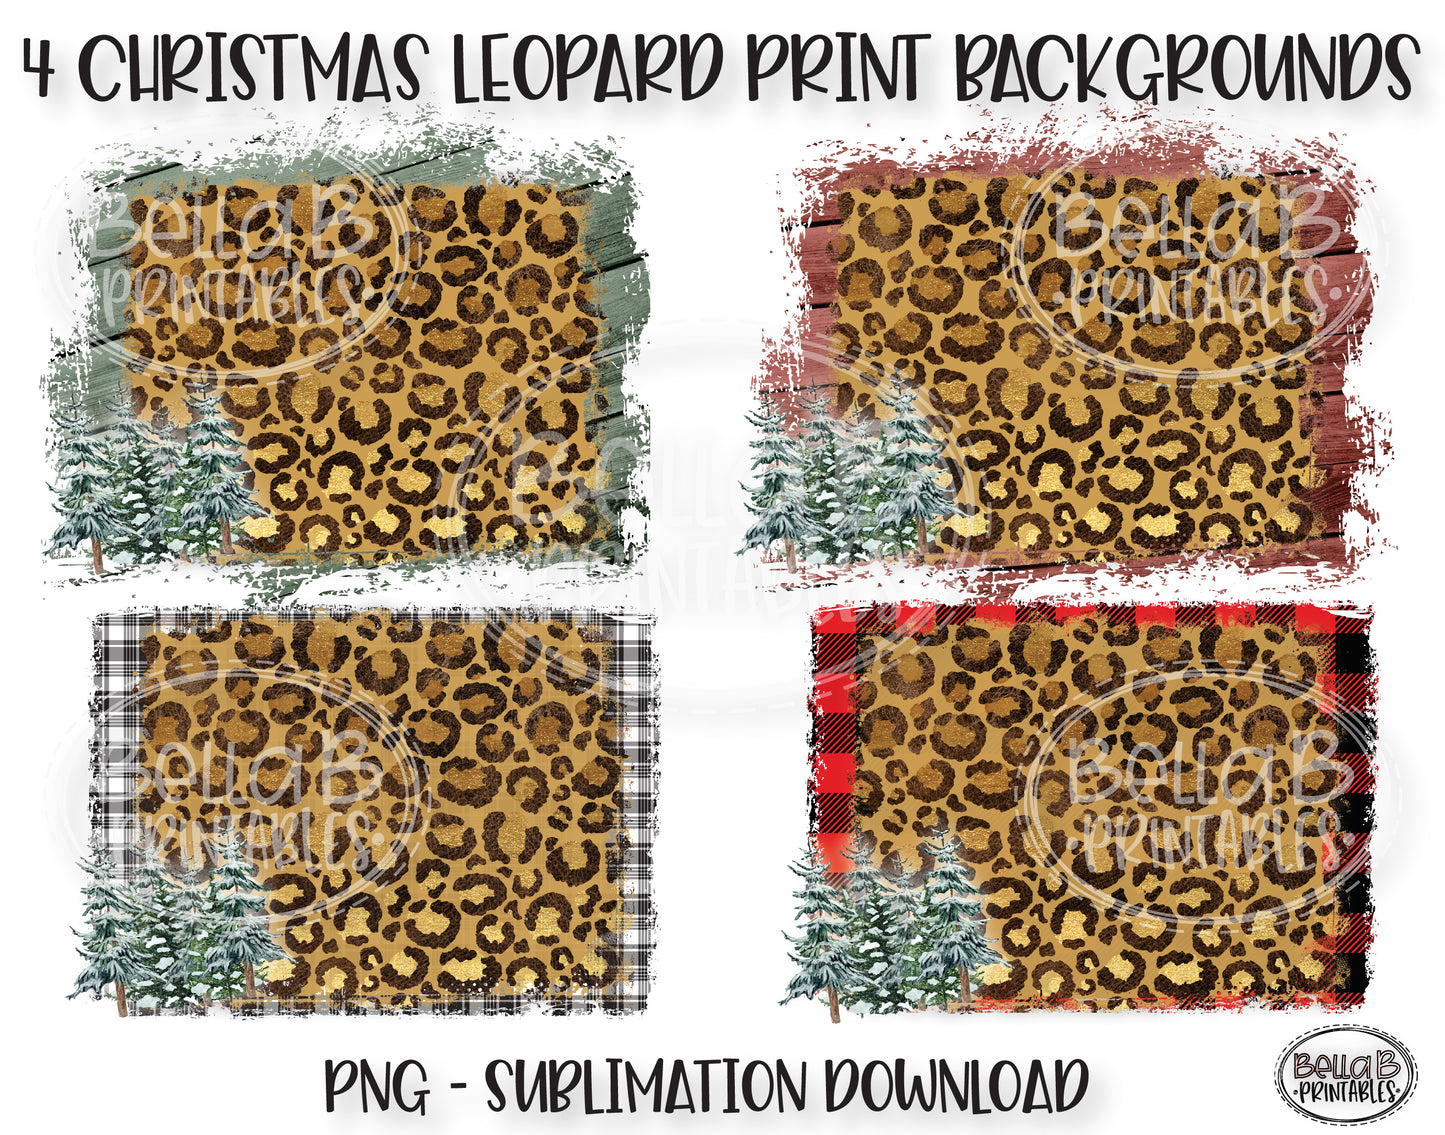 Buffalo Plaid and Leopard Print Sublimation Background Bundle, Backsplash